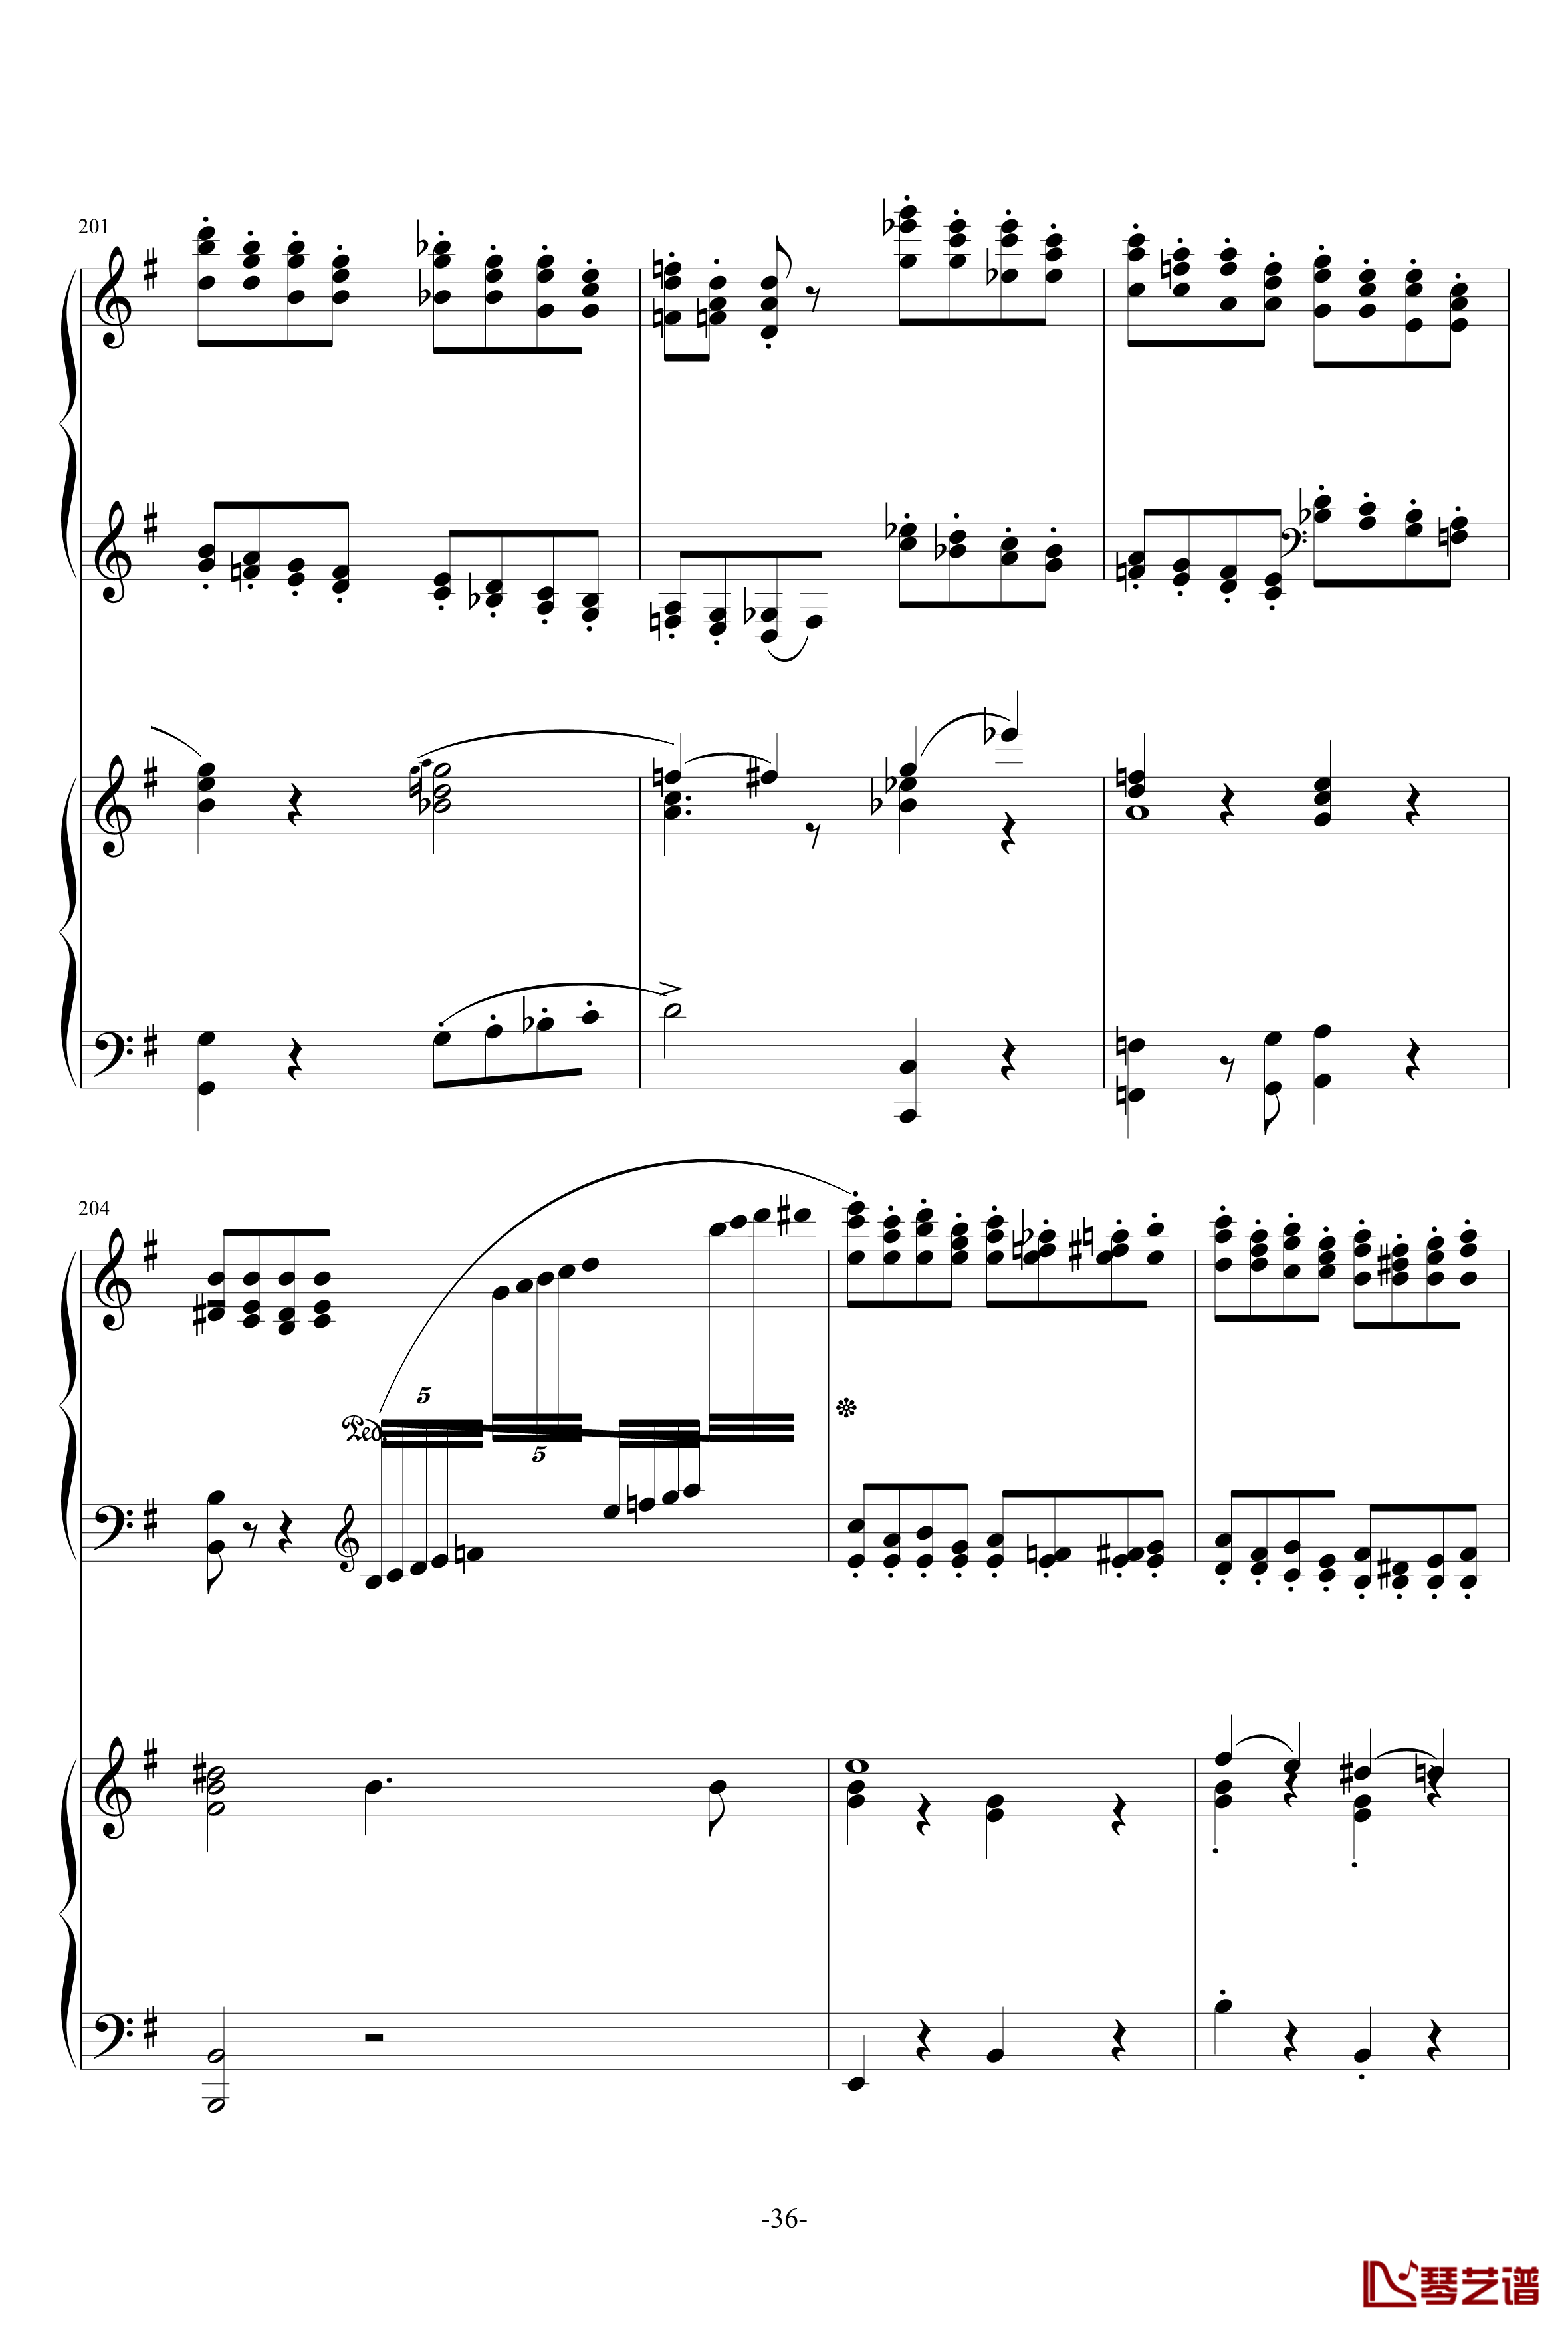 普罗科菲耶夫第三钢琴协奏曲第二乐章钢琴谱36